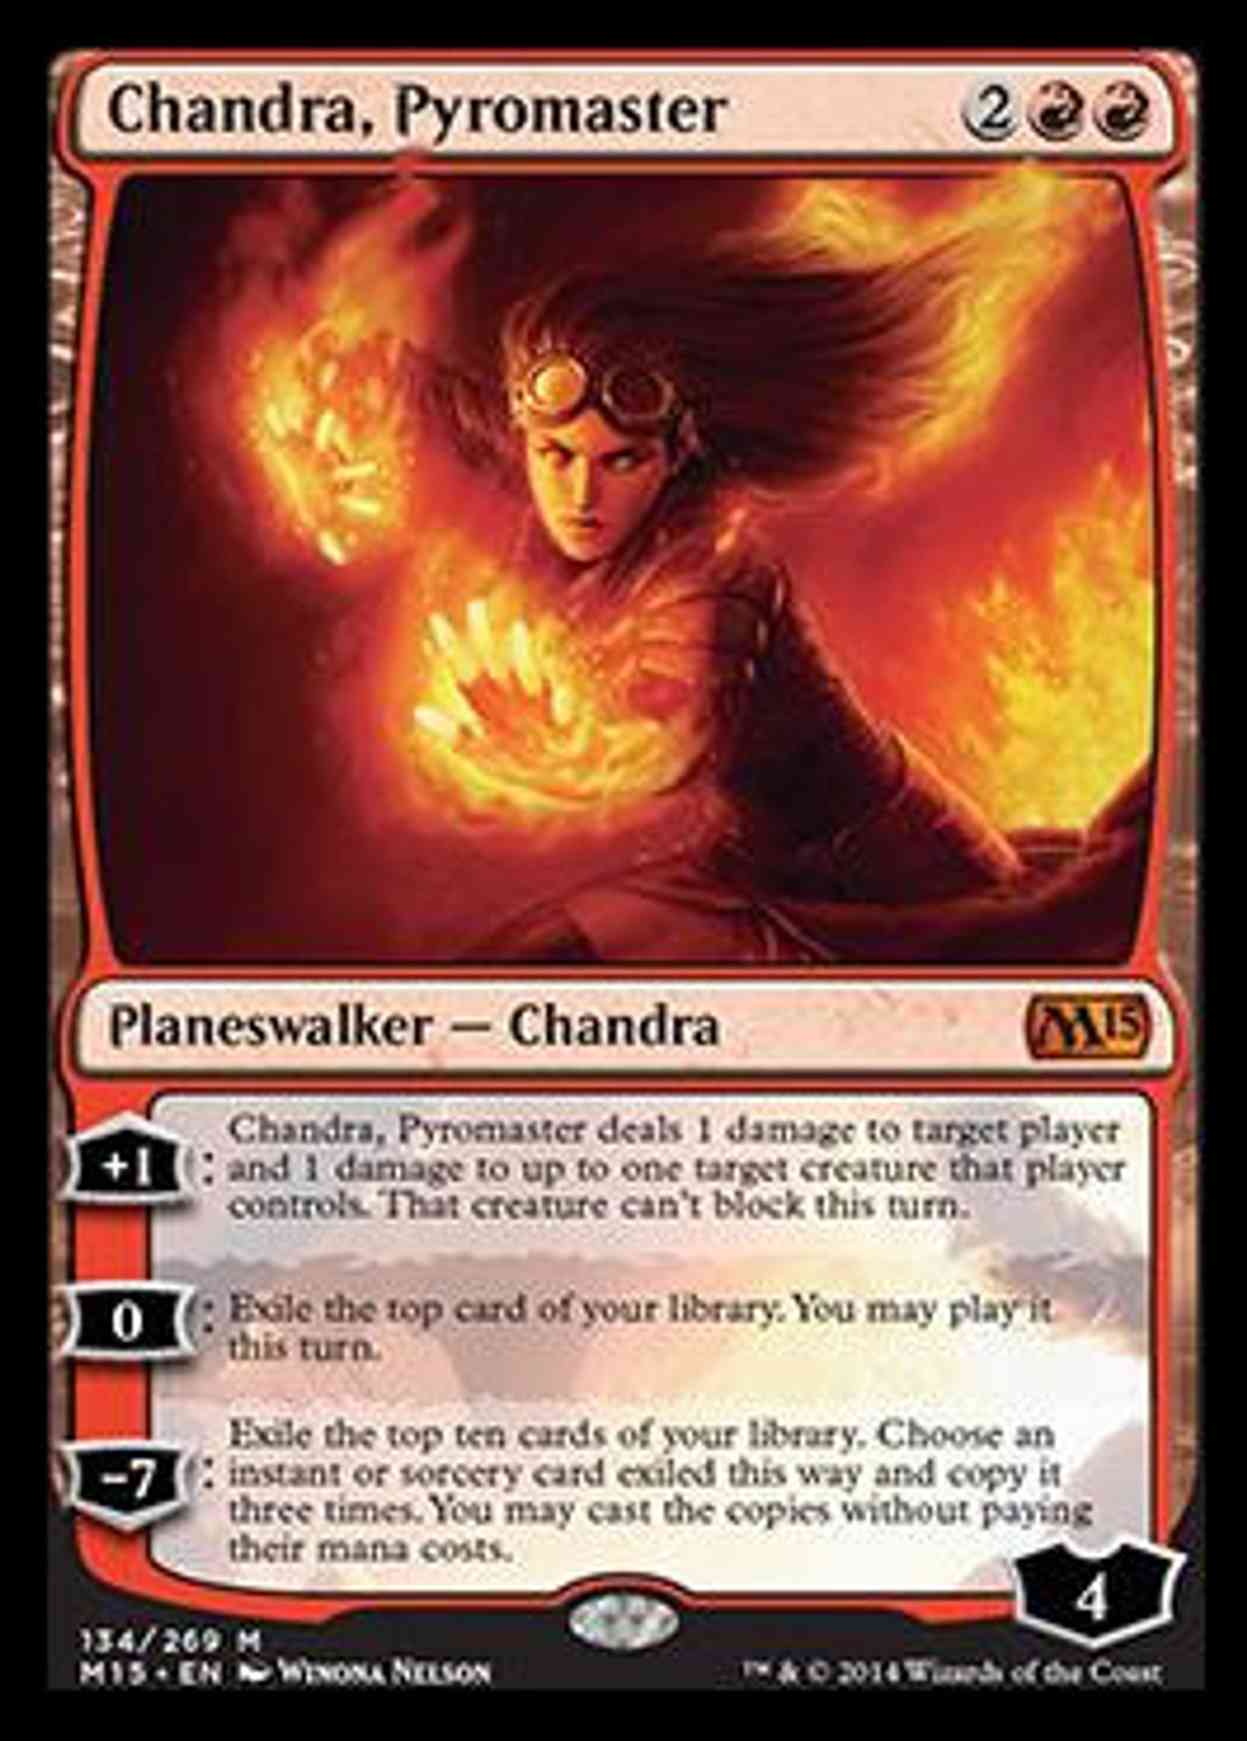 Chandra, Pyromaster magic card front